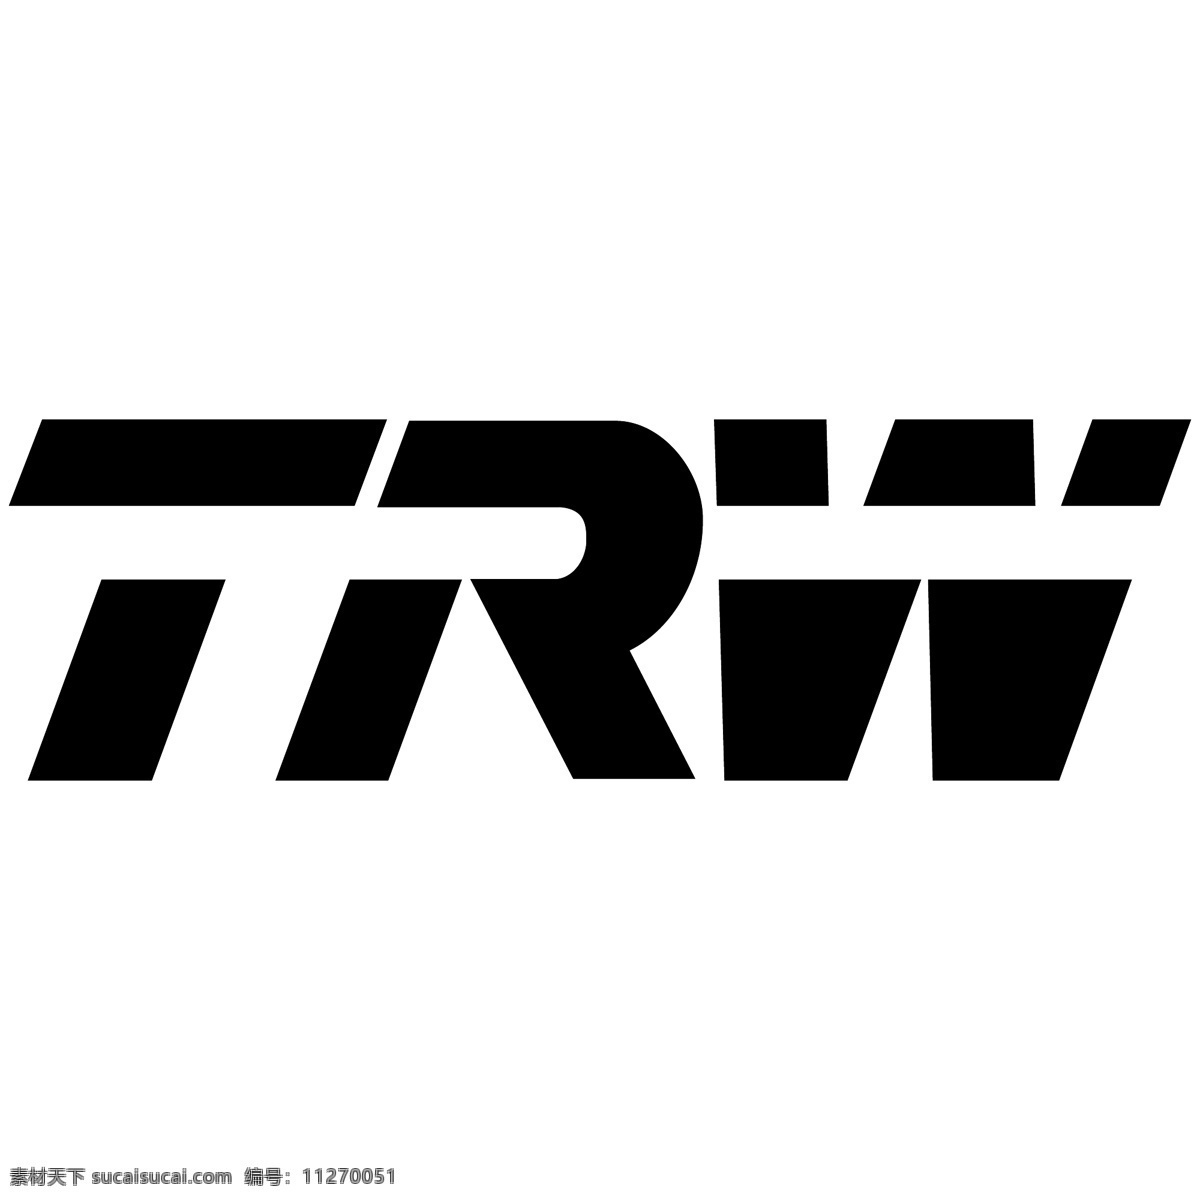 trw 天合 标识 标识为免费 白色